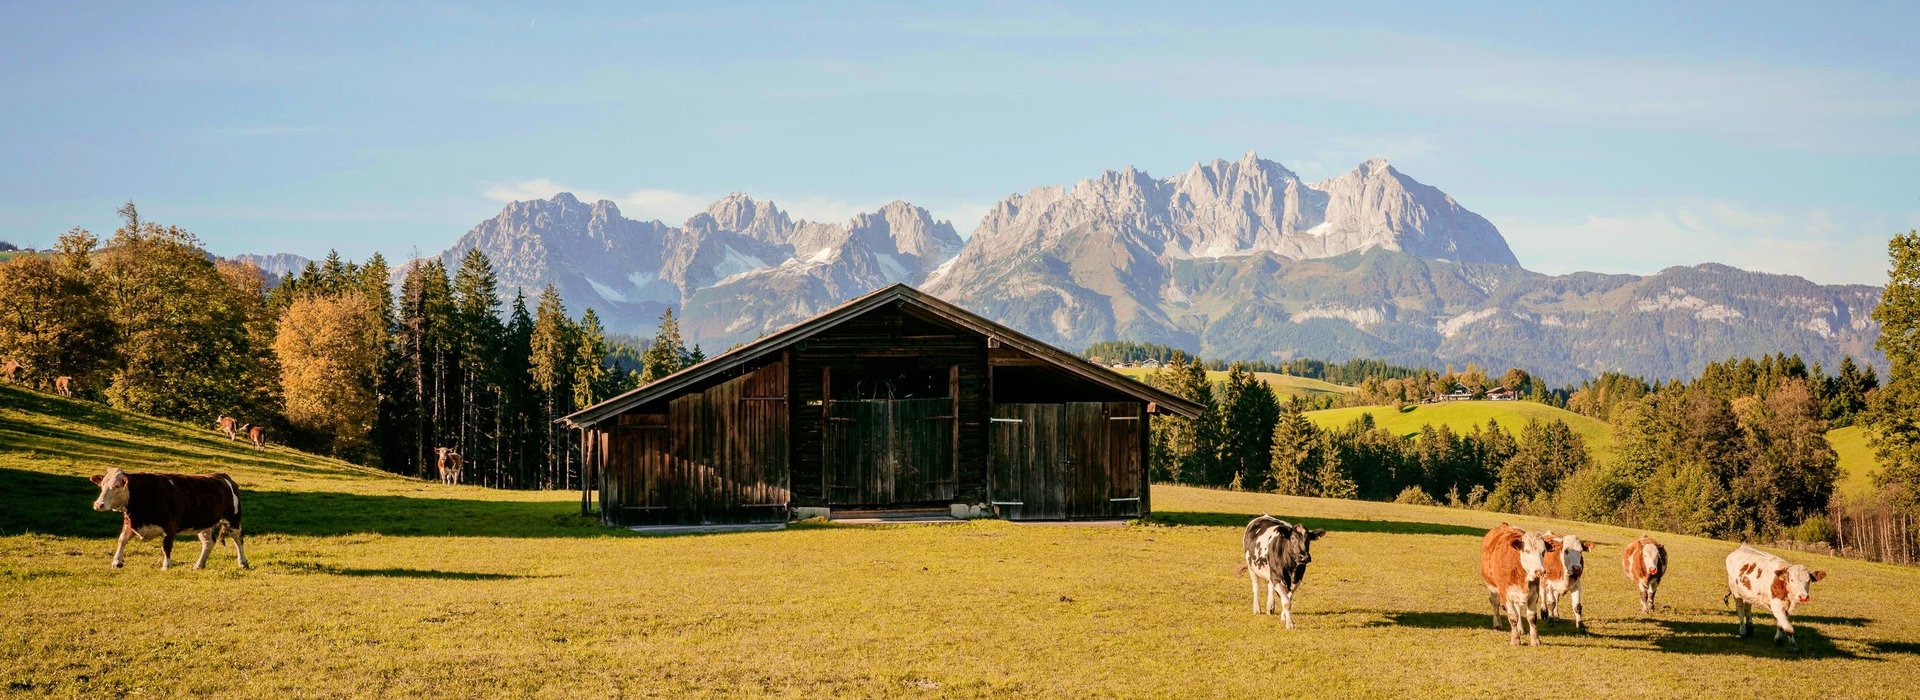 Eine Hütte auf einer Wiese mit Kühen vor einem Berghintergrund